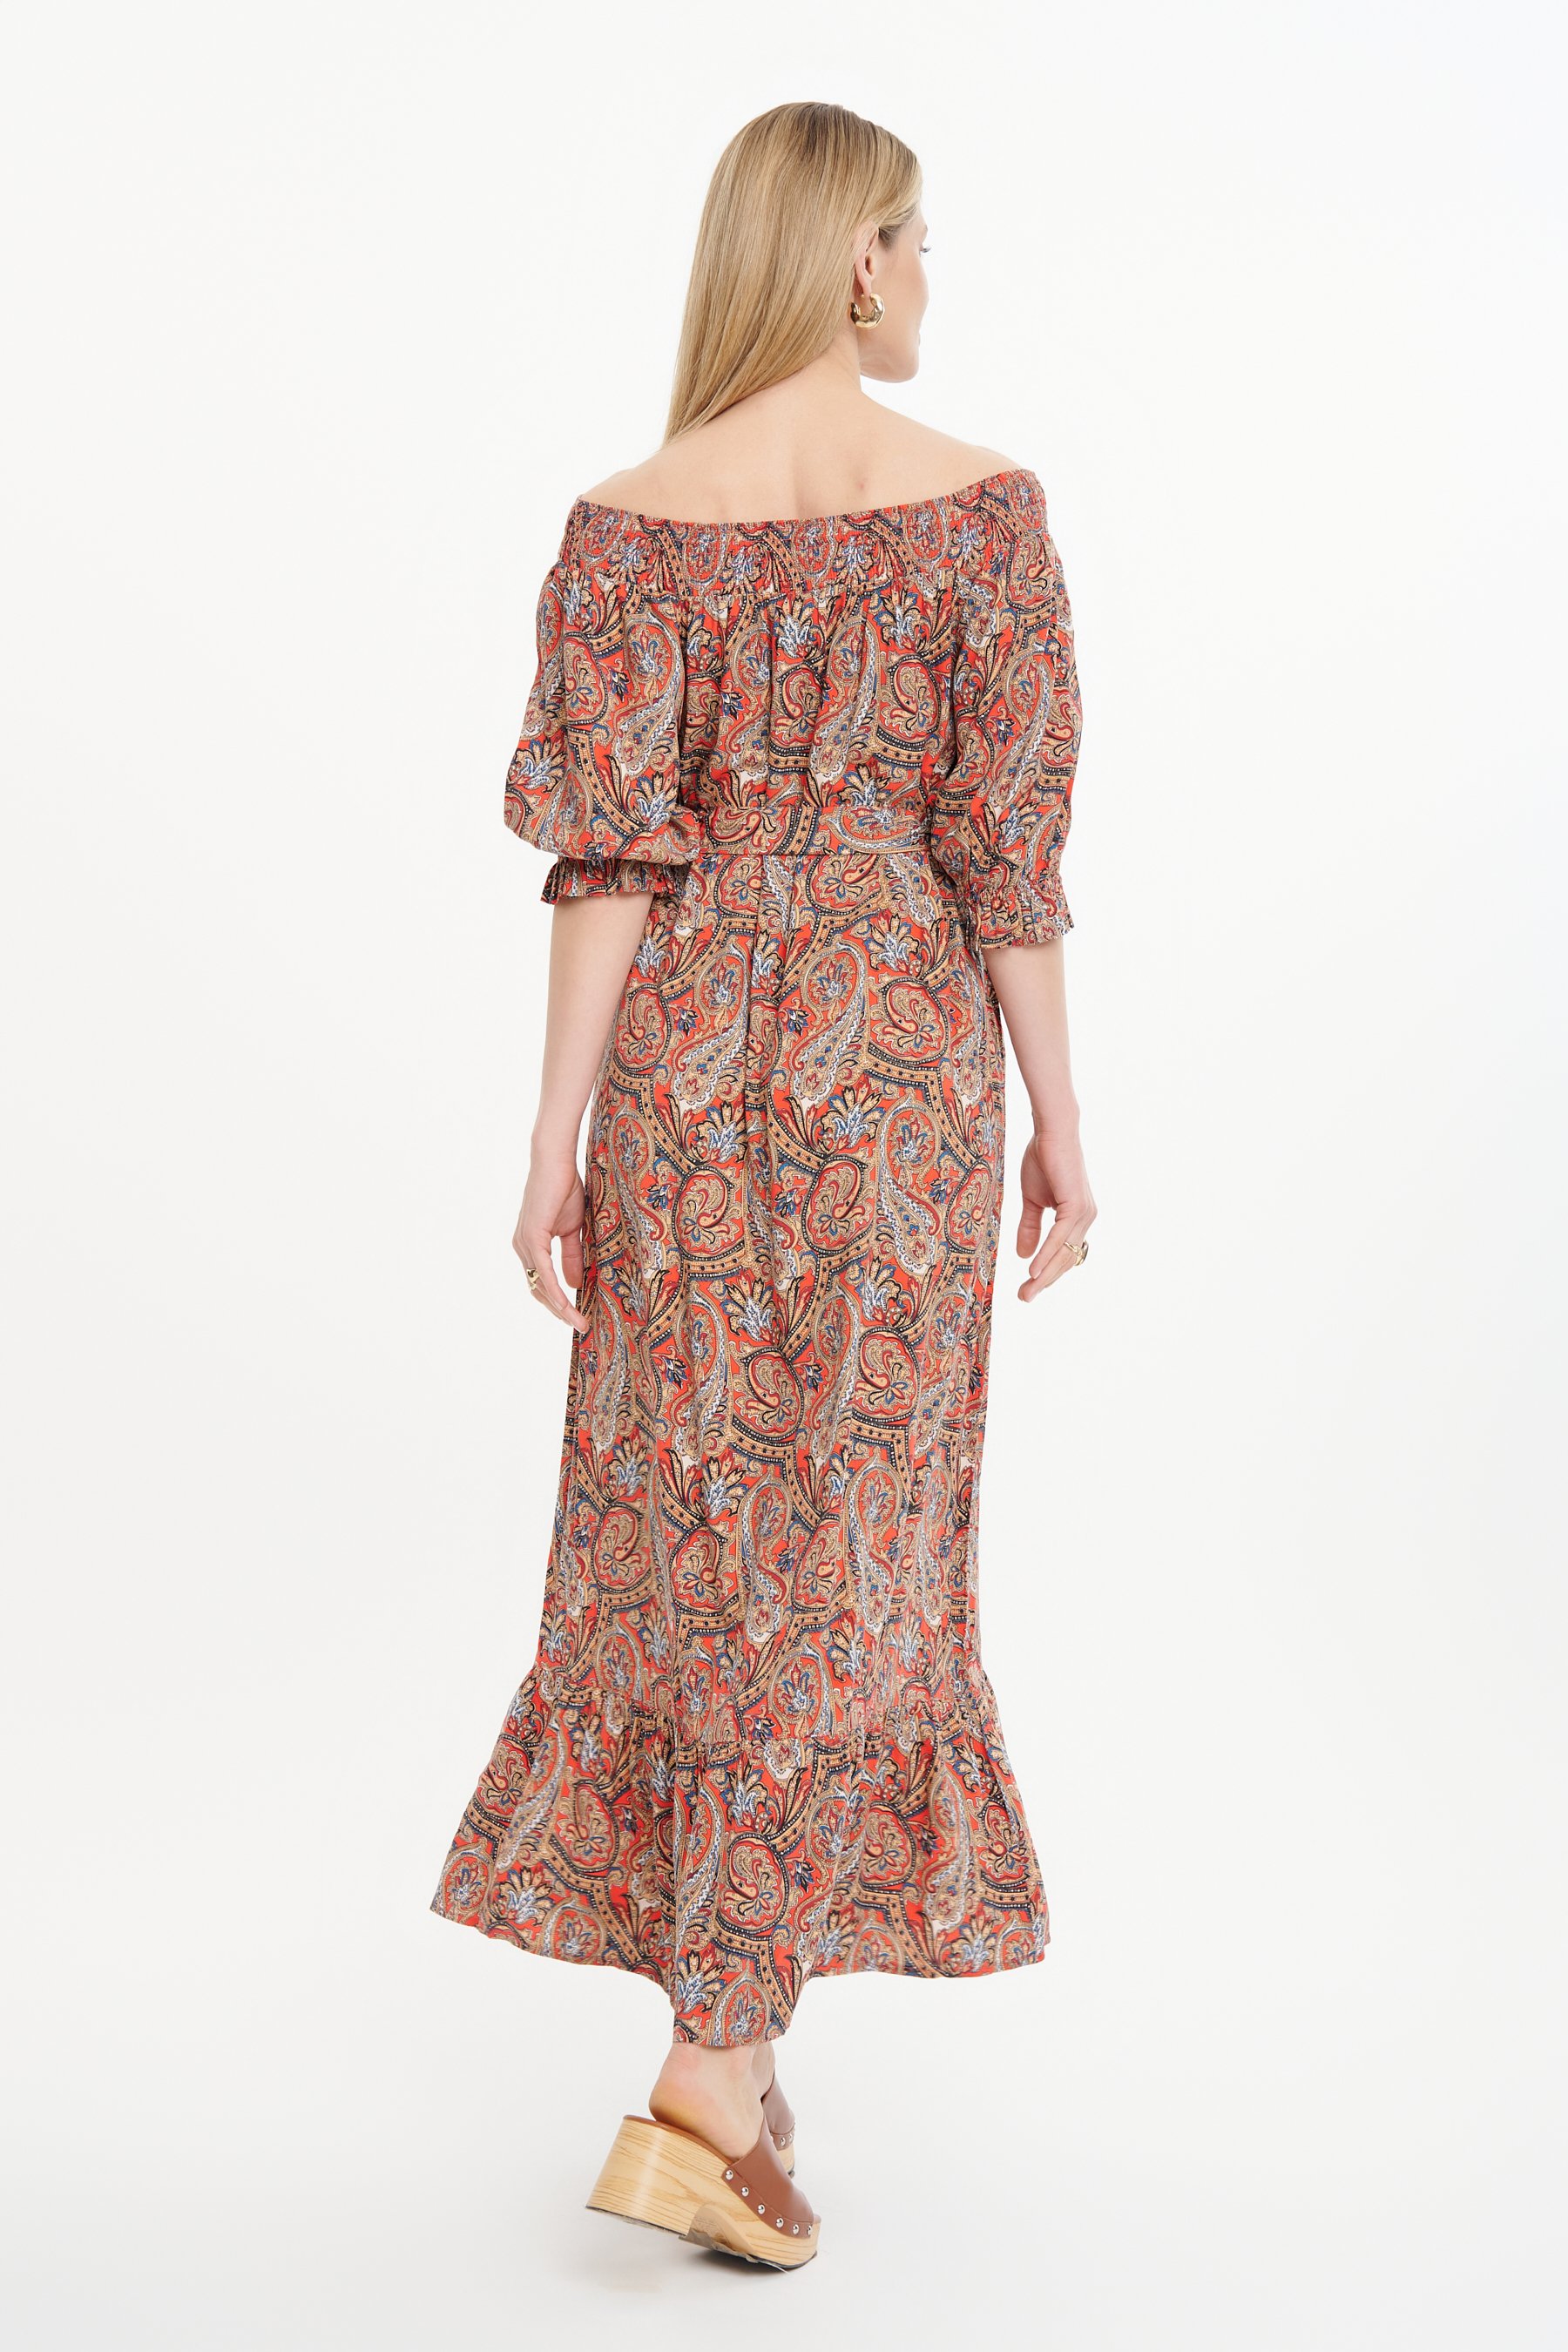 Multikolorowa długa sukienka paisley